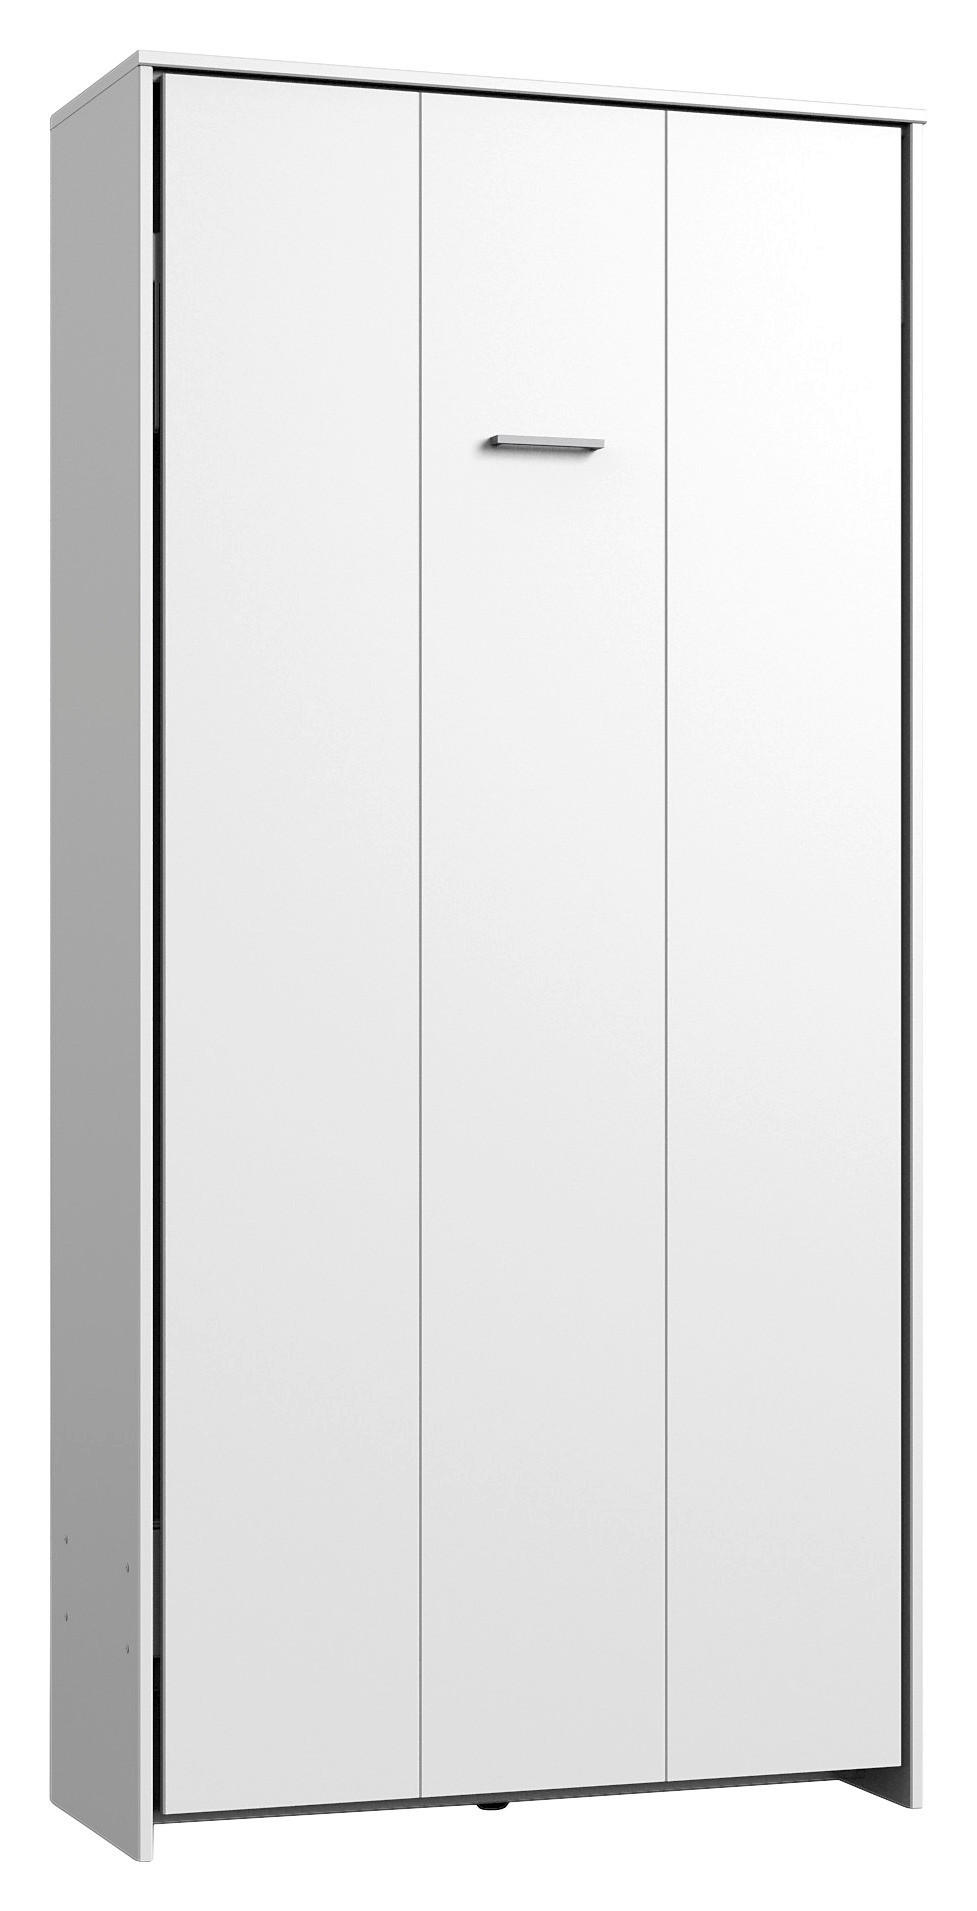 SCHRANKBETT  90/200 cm Weiß  - Weiß, KONVENTIONELL, Holz/Metall (90/200cm) - MID.YOU